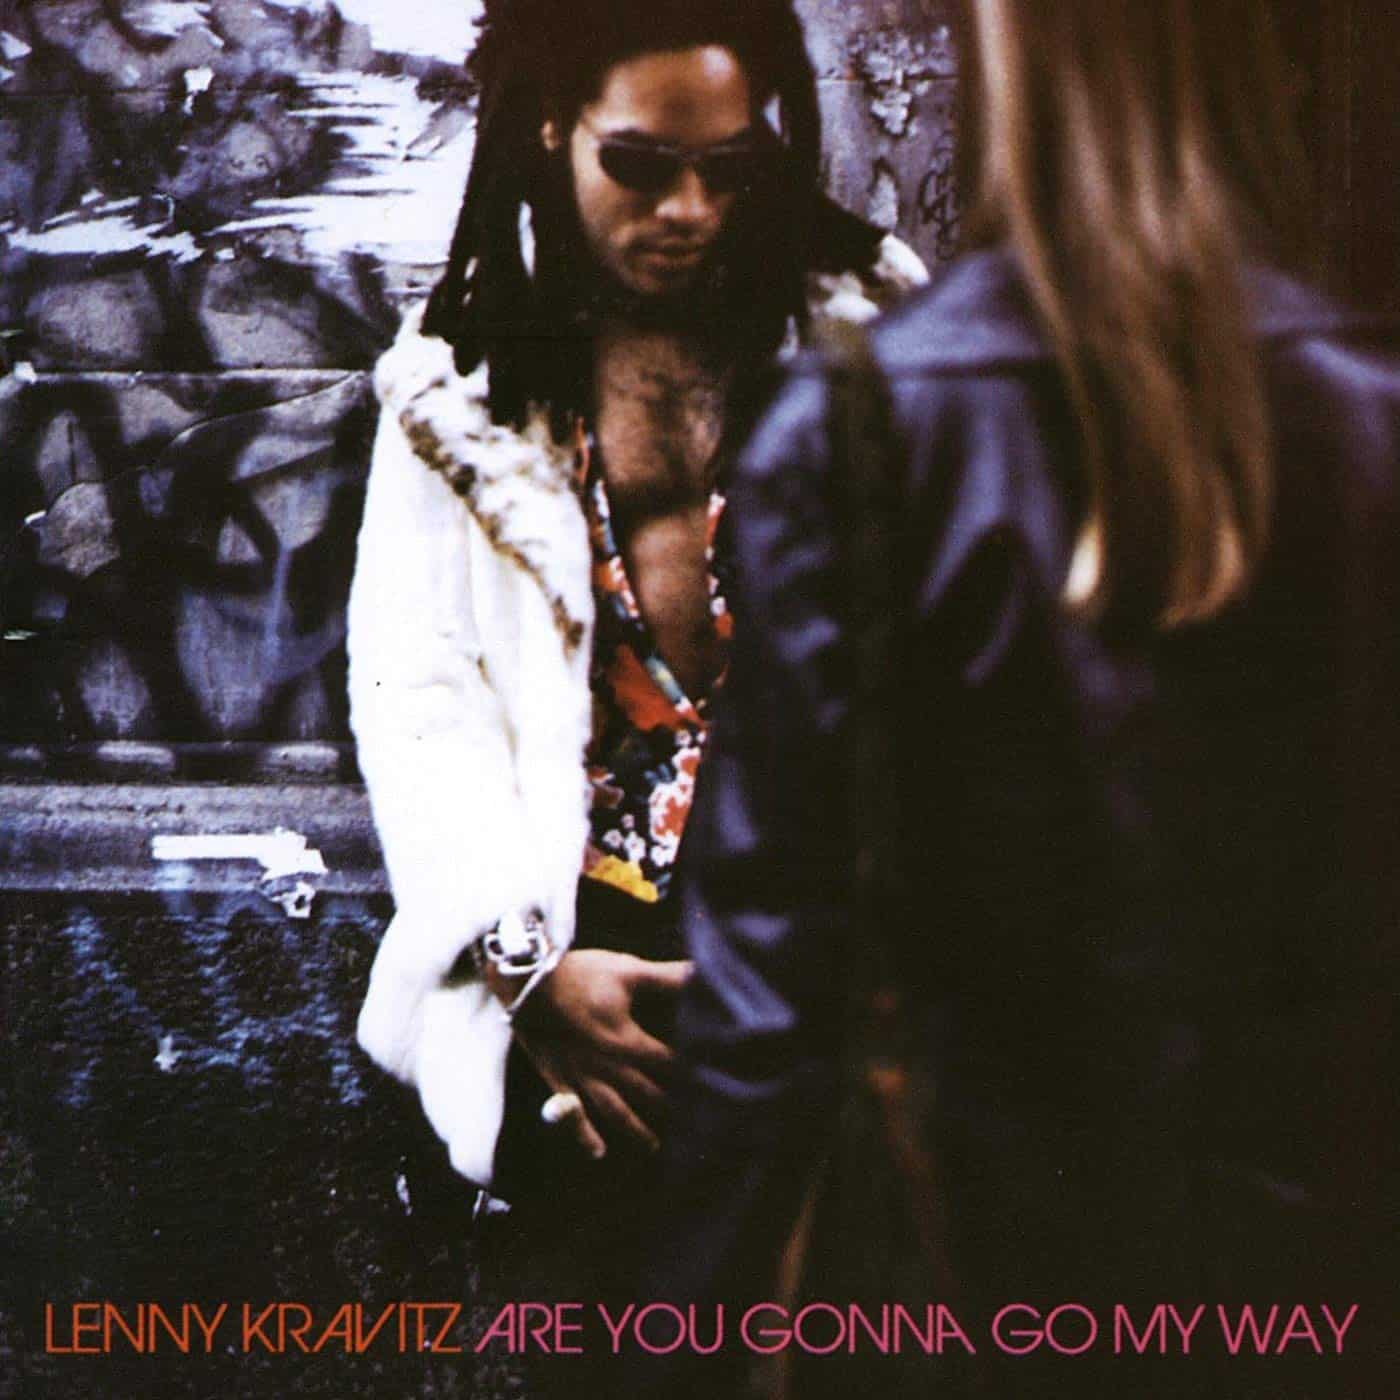 Lenny-Kravitz-Are_You-Gonna-Go-My-Way-vinyl-record